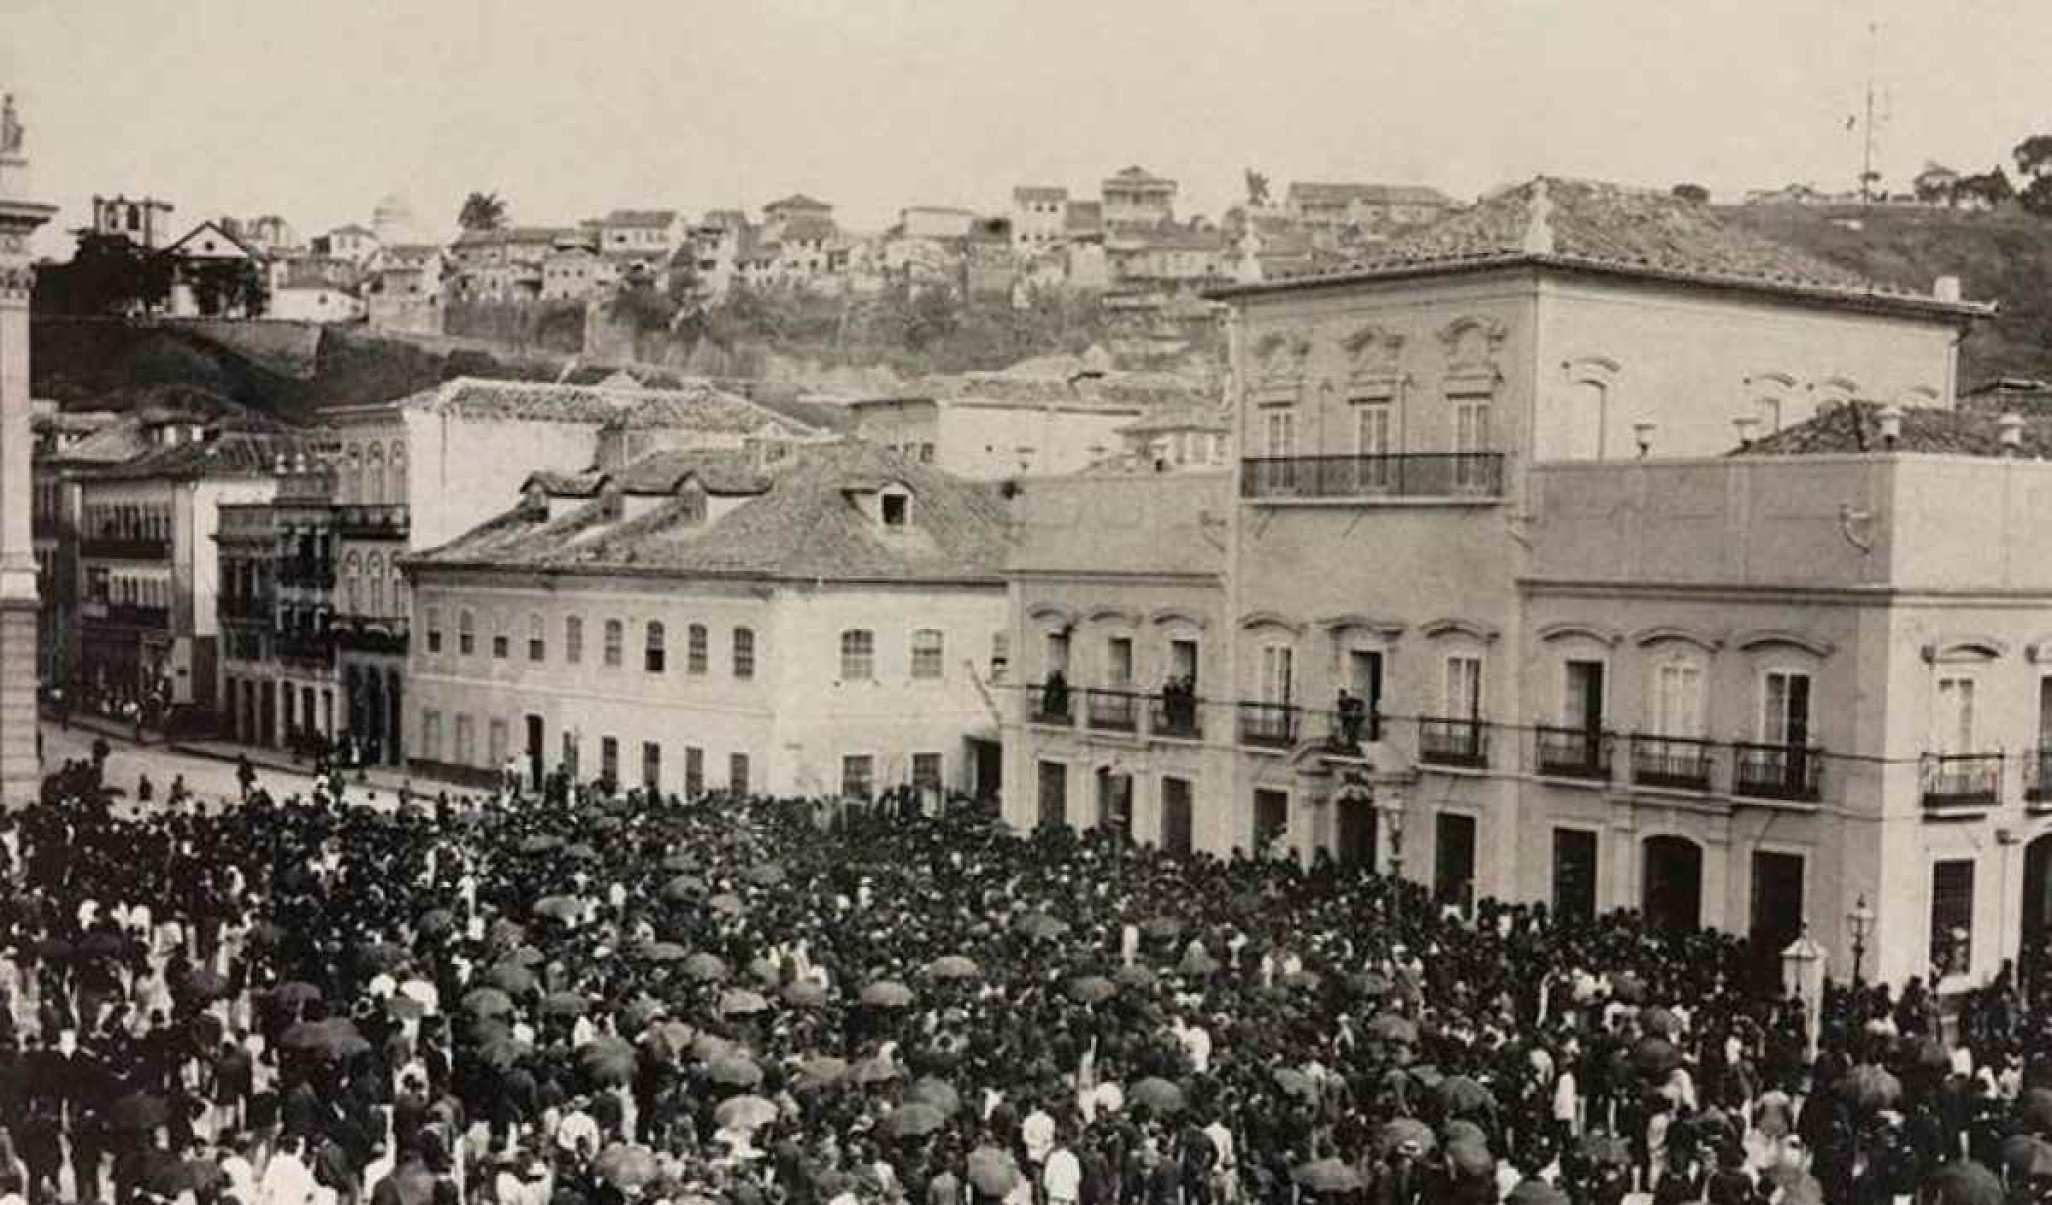 Imagem histórica mostrando uma multidão de pessoas na frente de uma edificação de 1800.